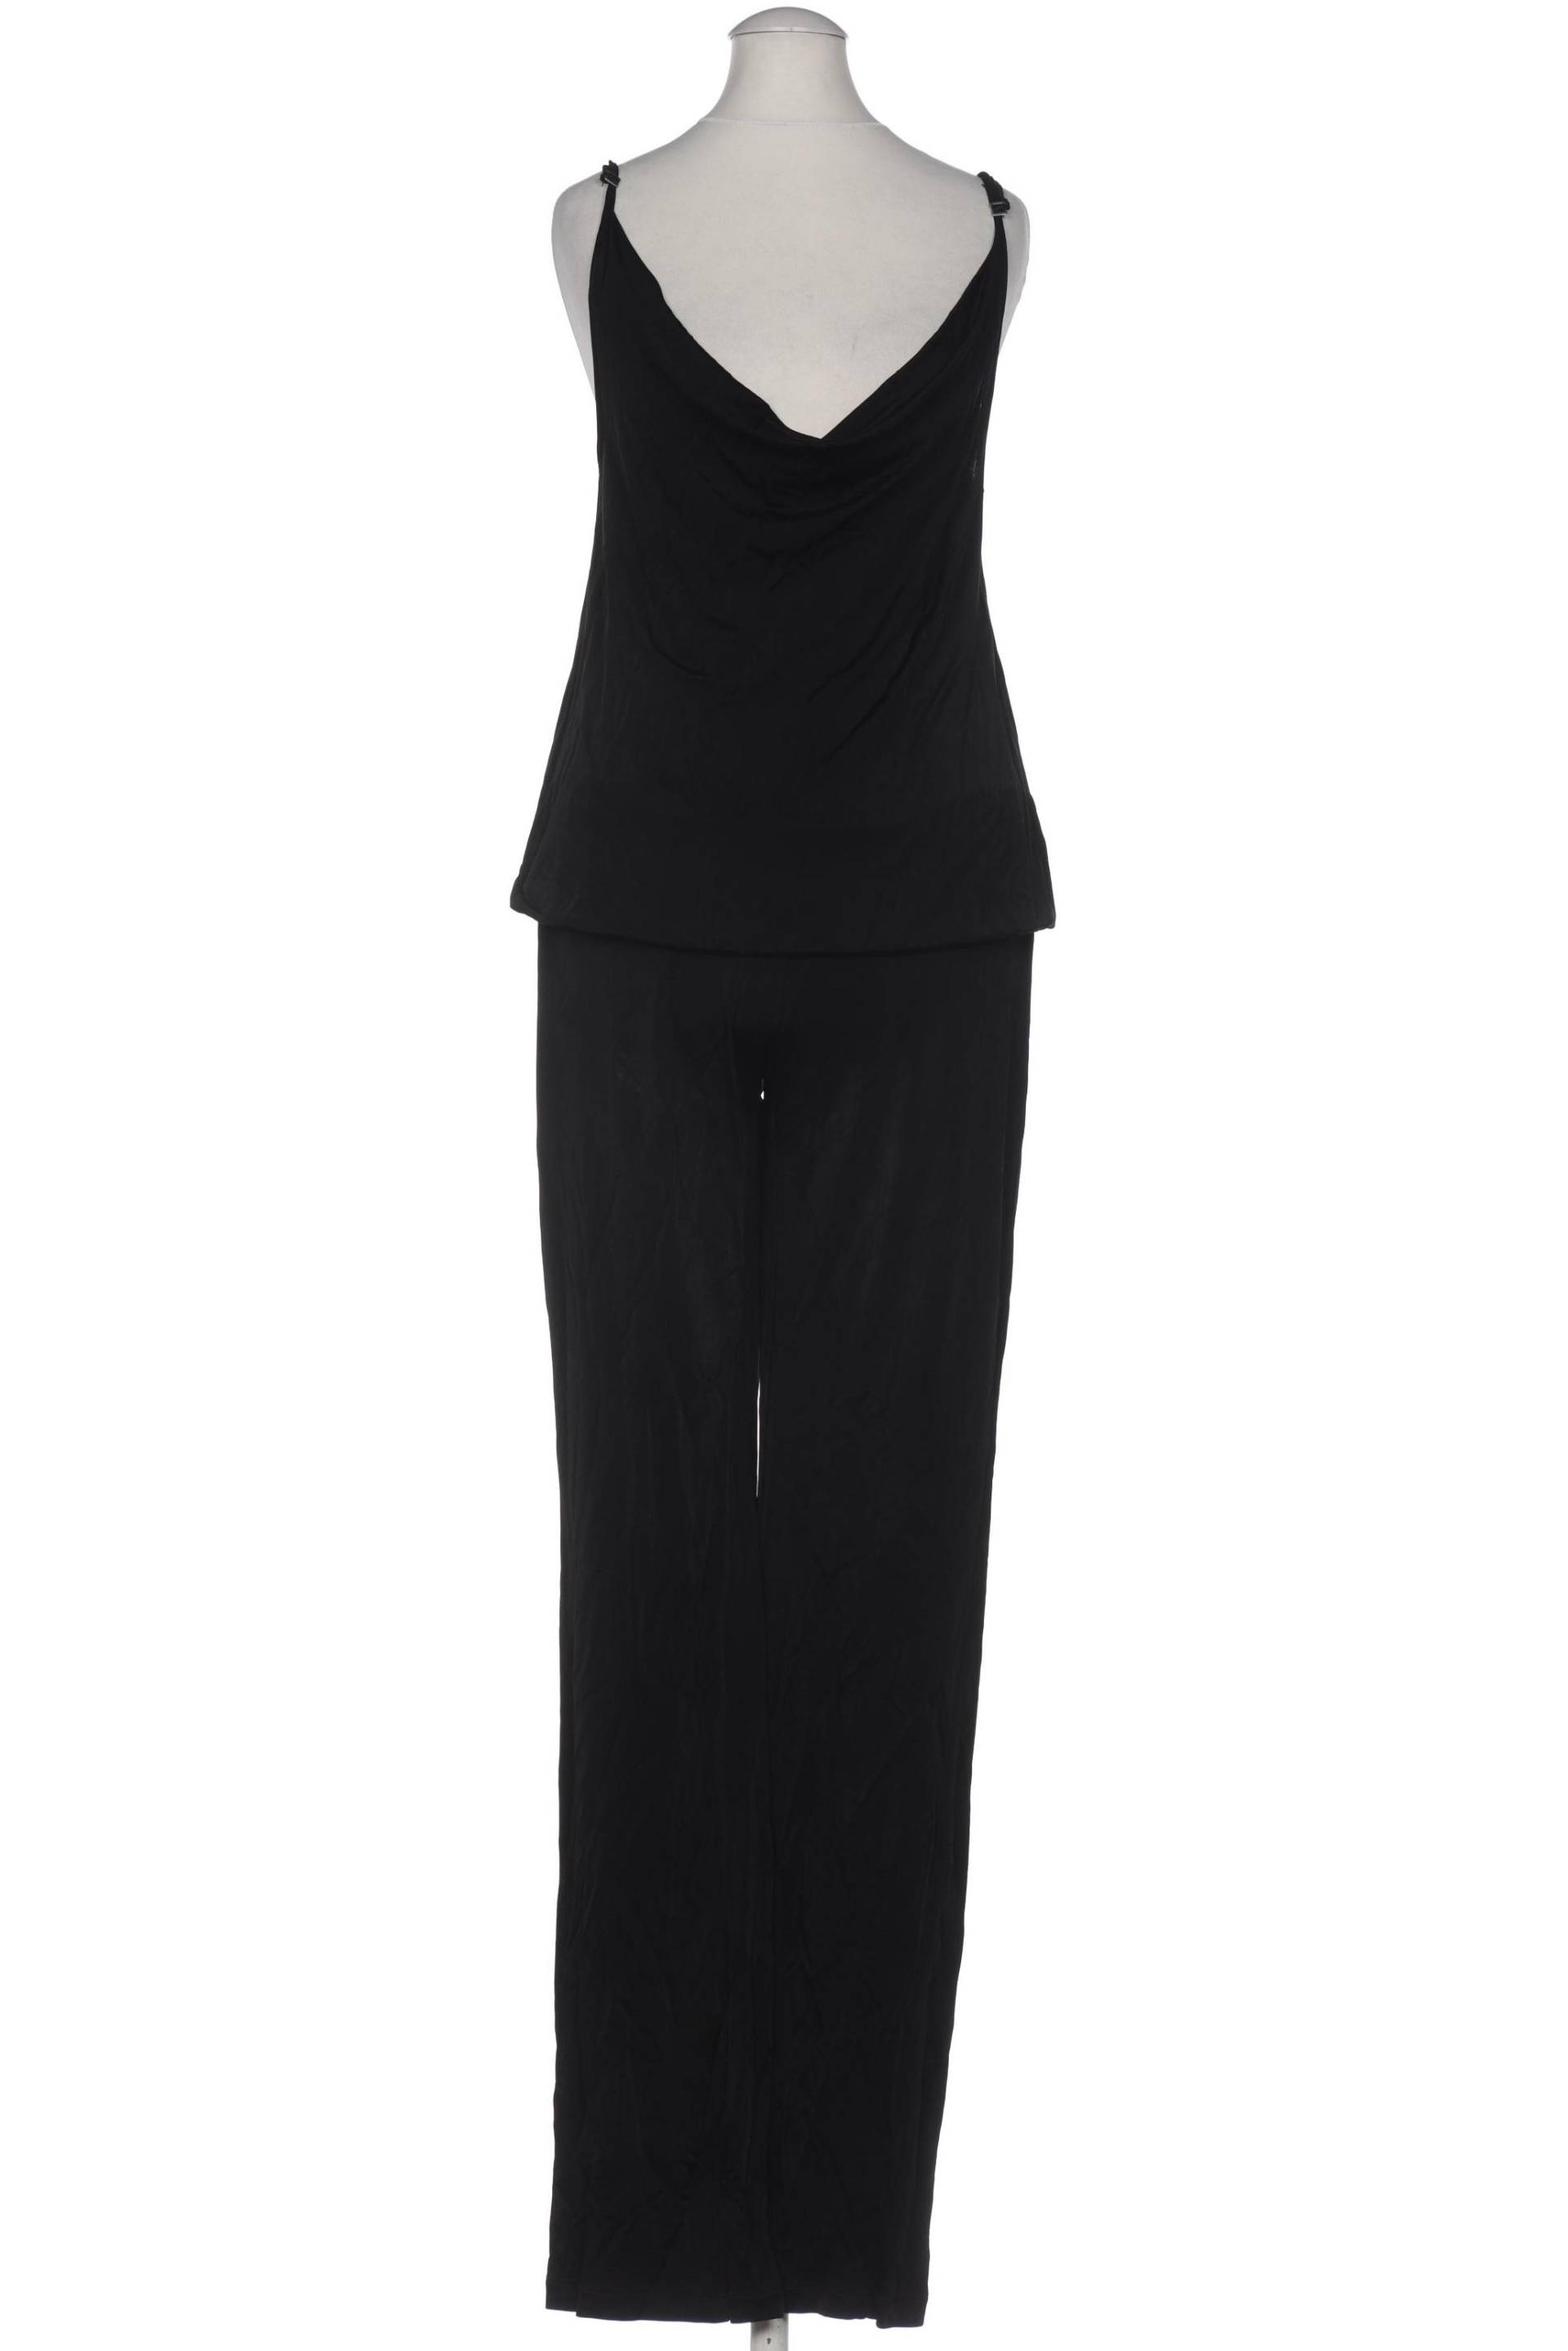 Mexx Damen Jumpsuit/Overall, schwarz, Gr. 34 von Mexx